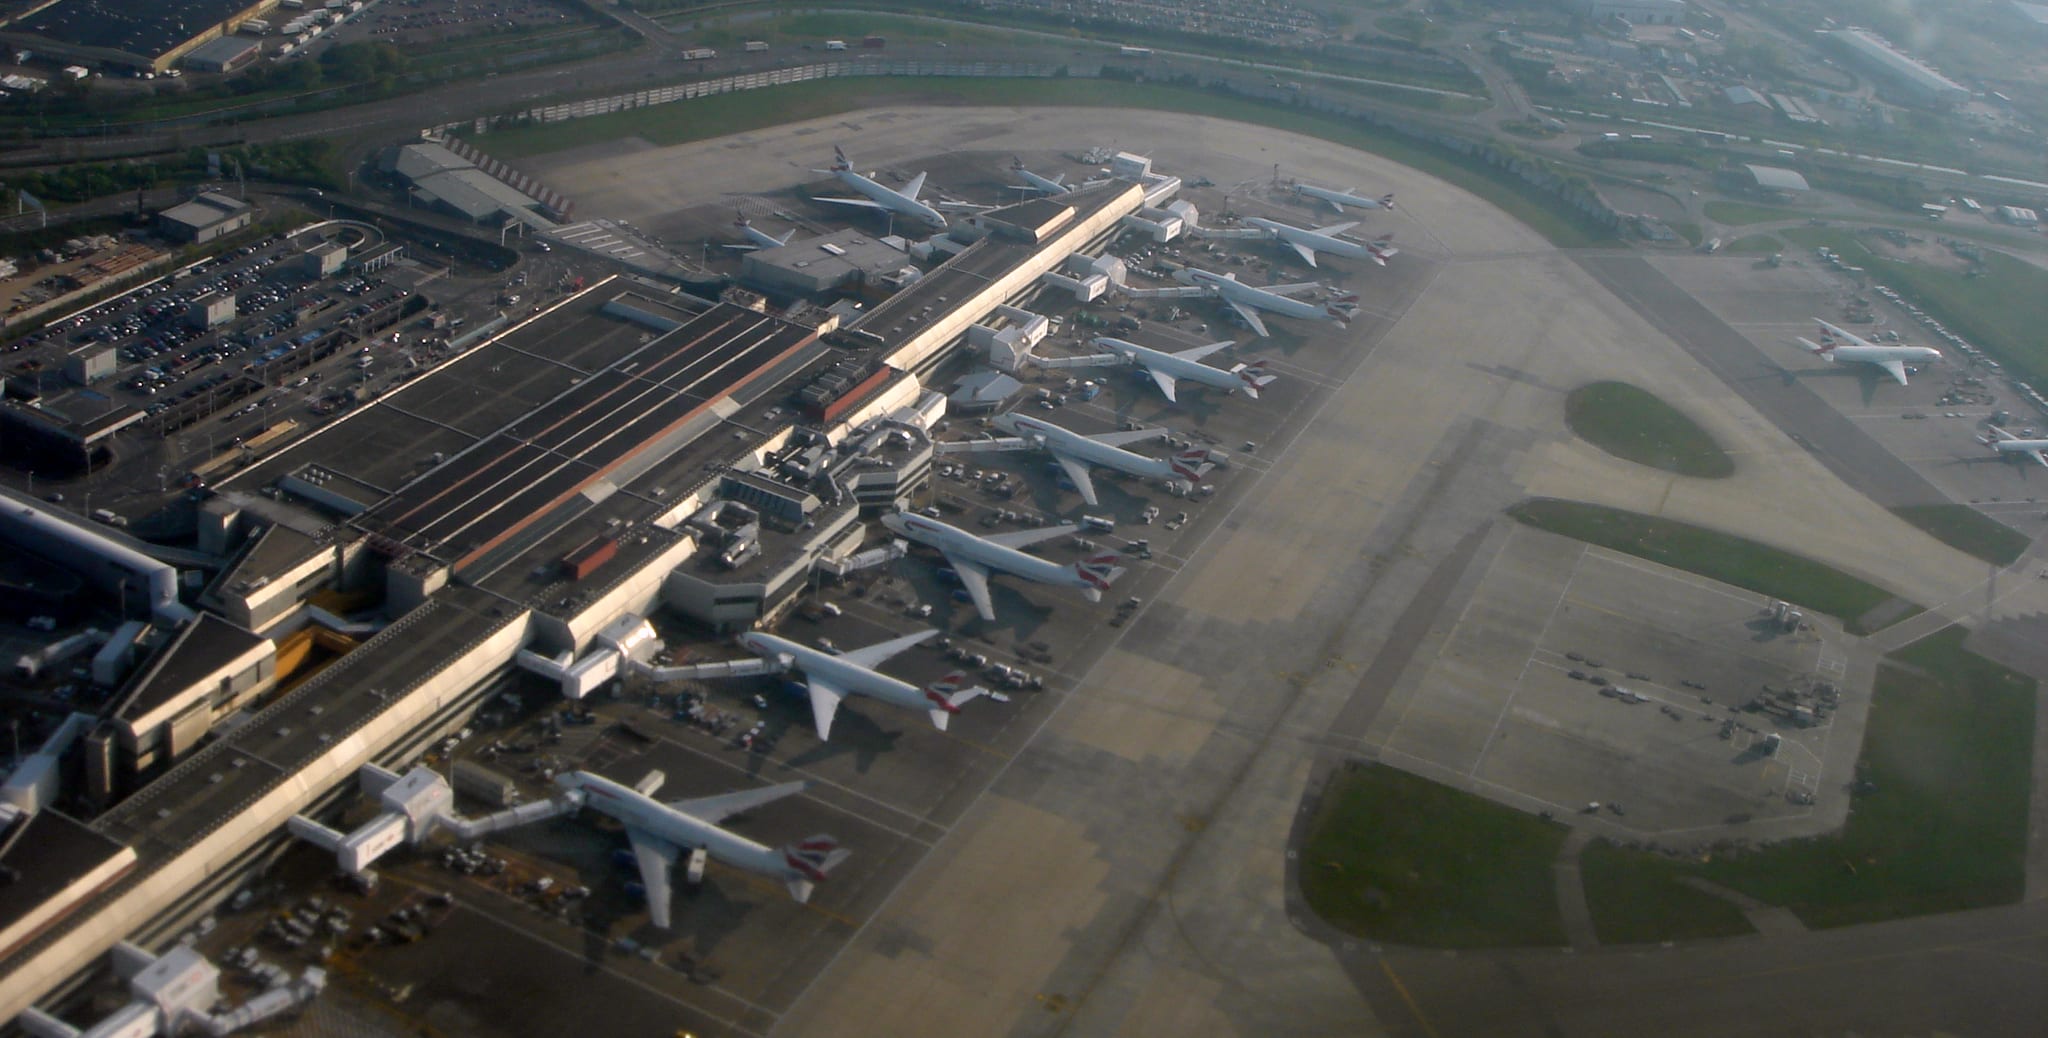 Heathrow Terminal 4. Attribution Mariordo@aol.com